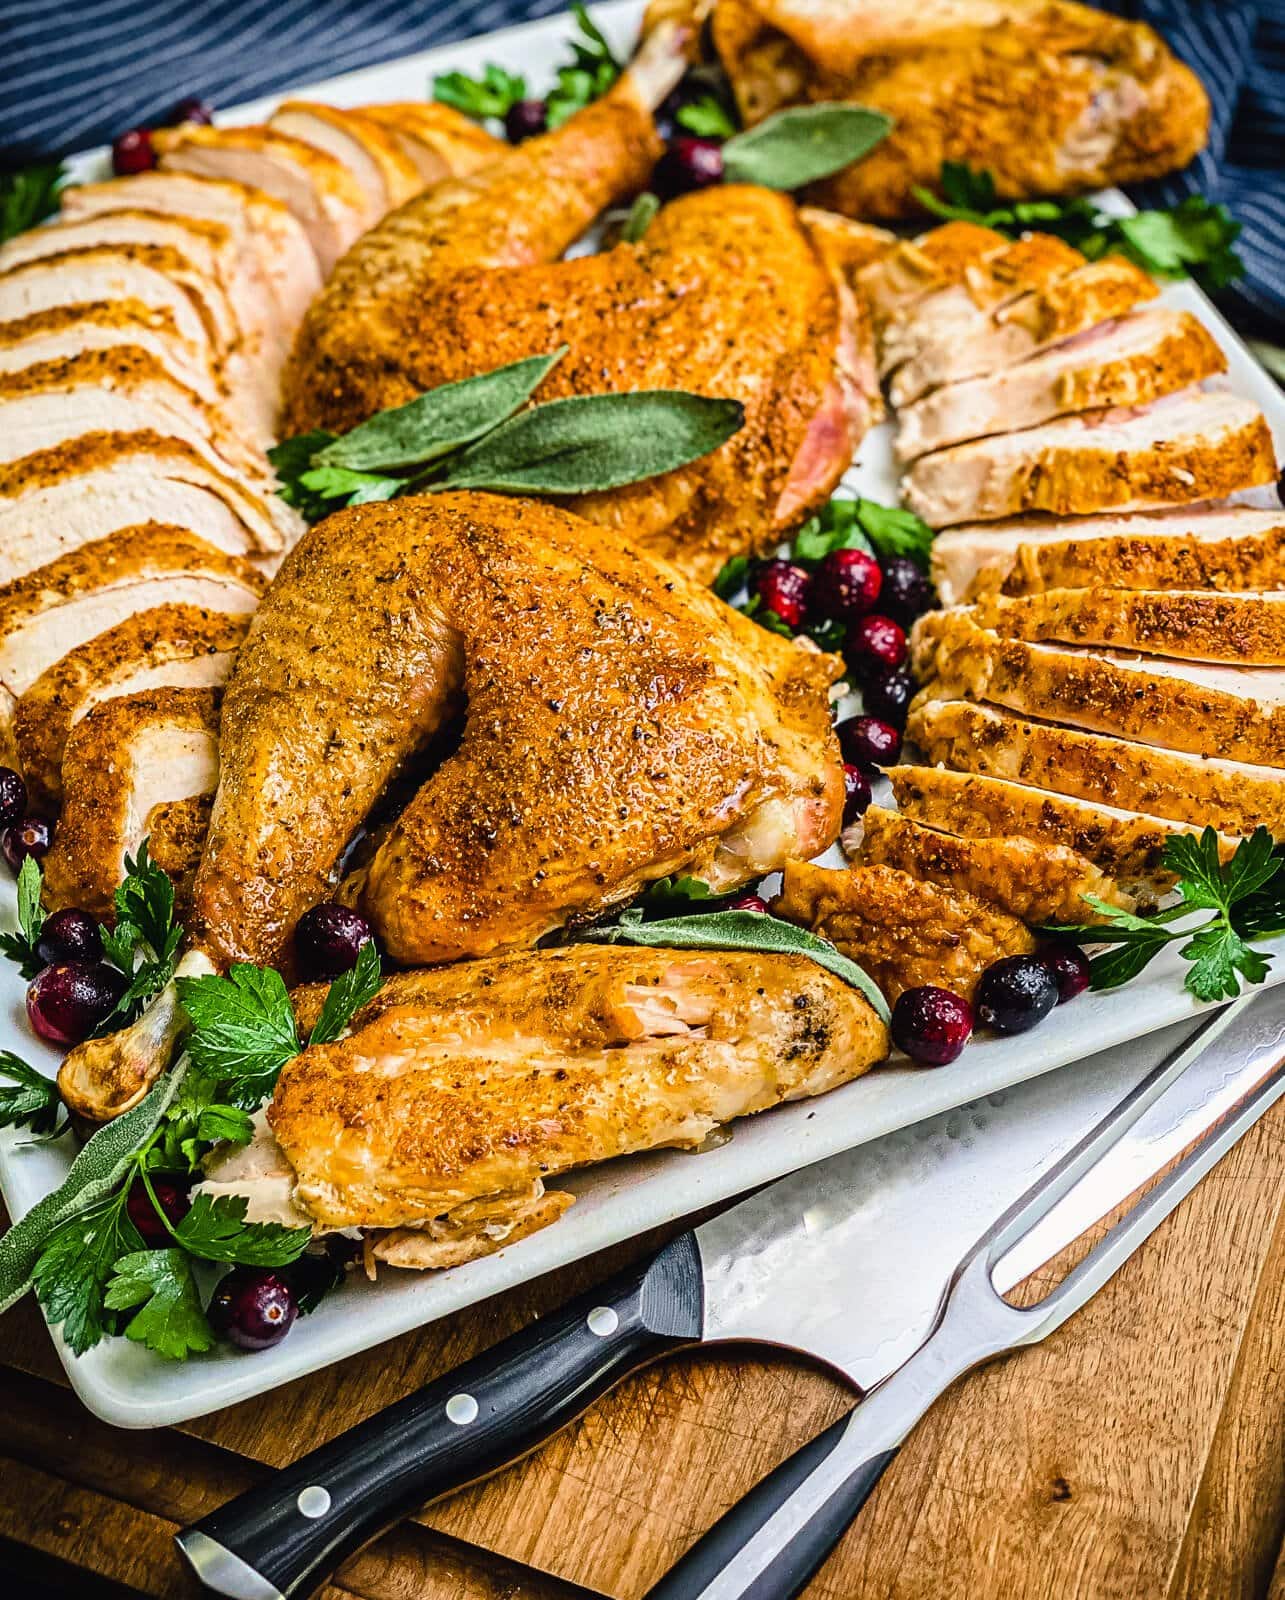 https://www.grillseeker.com/wp-content/uploads/2019/11/carved-whole-turkey-recipe-card.jpg